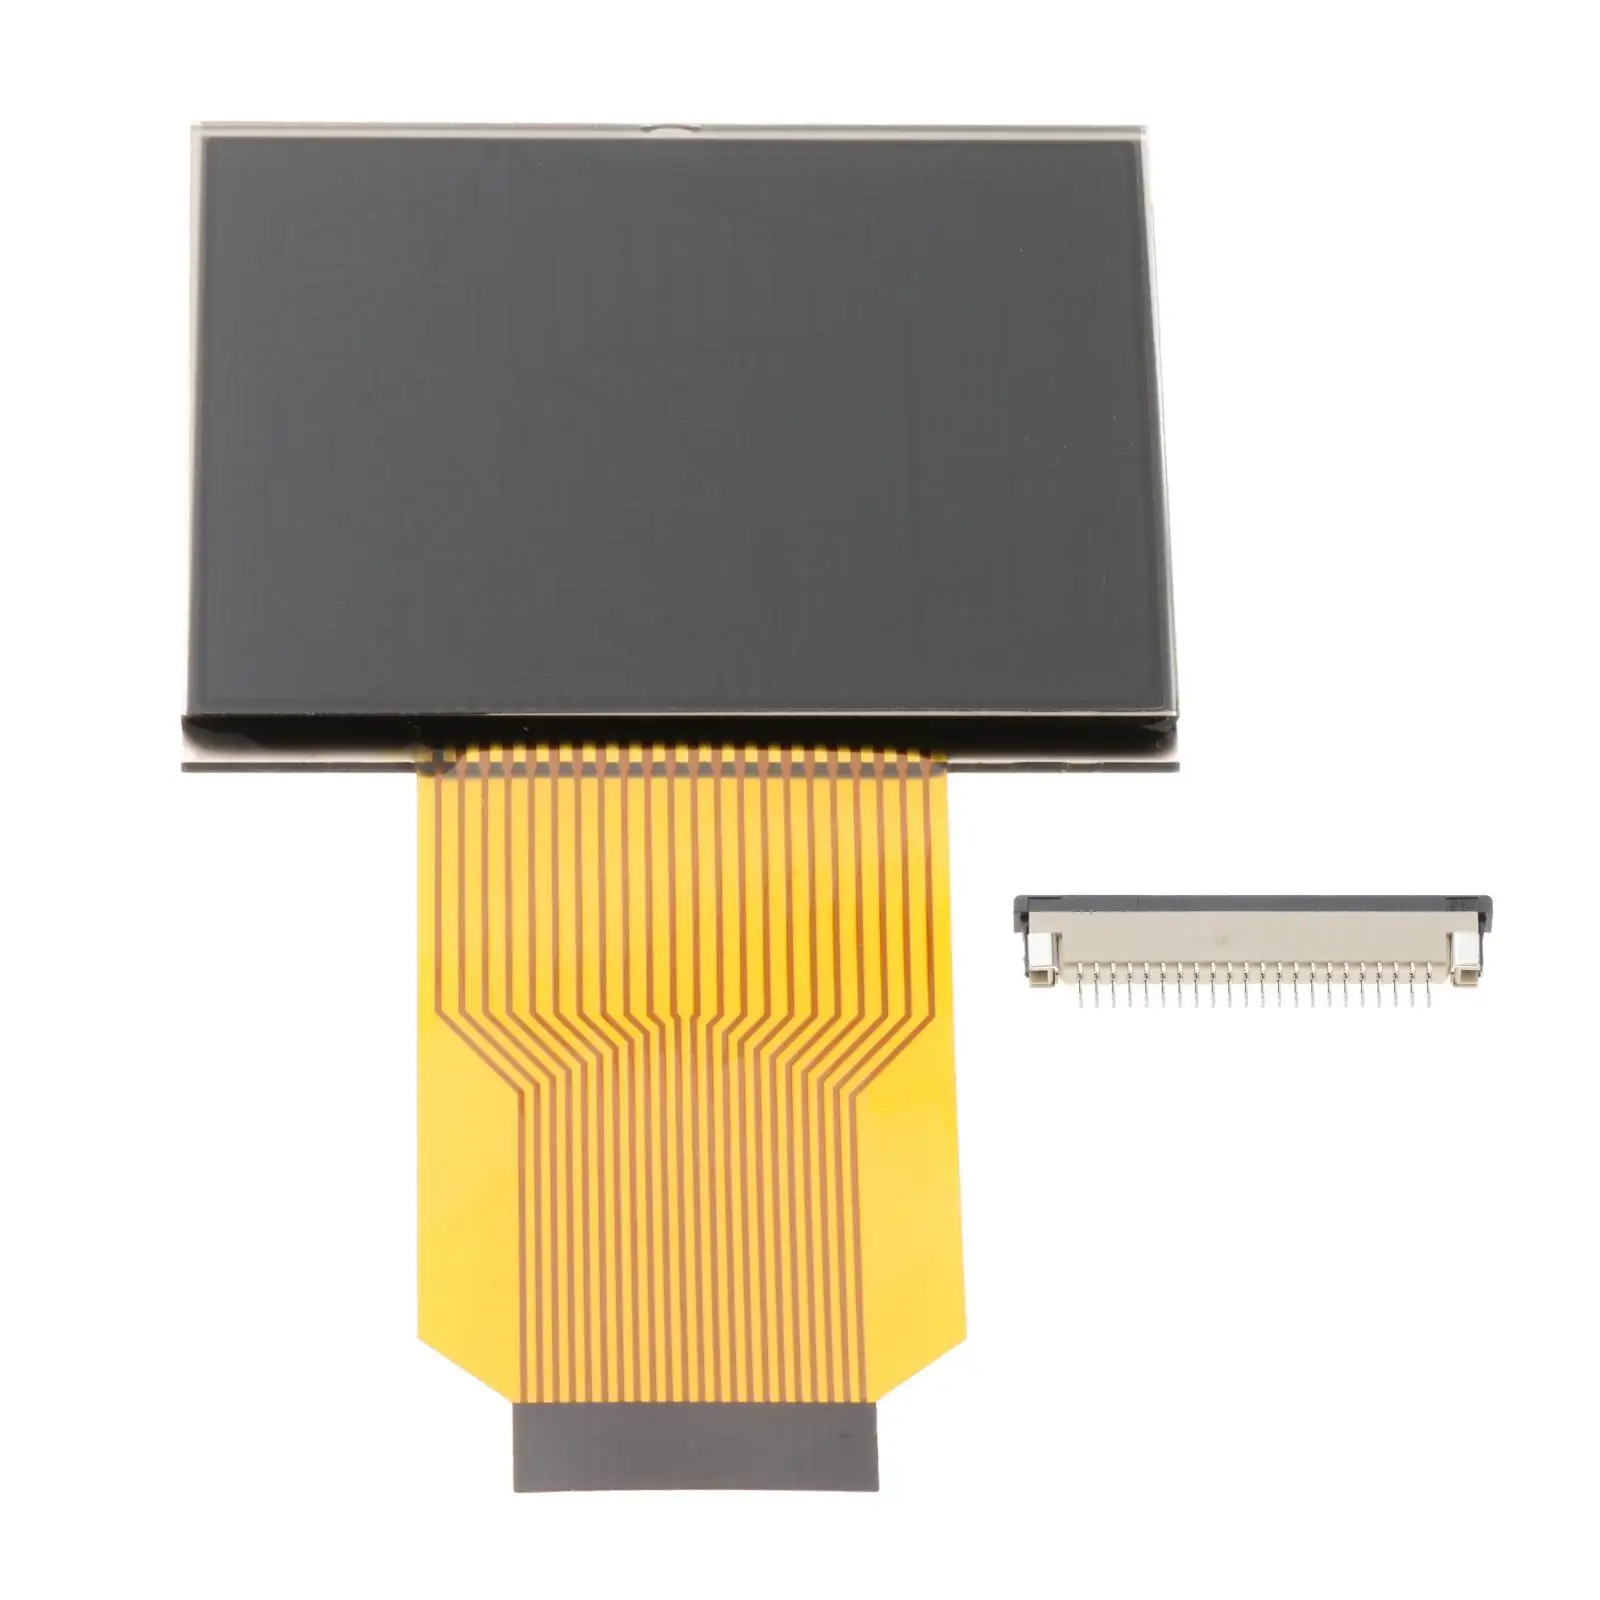 Pixel Repair LCD Screen Repair Ribbon Cable Car Fit for Saab 93 50-46-214